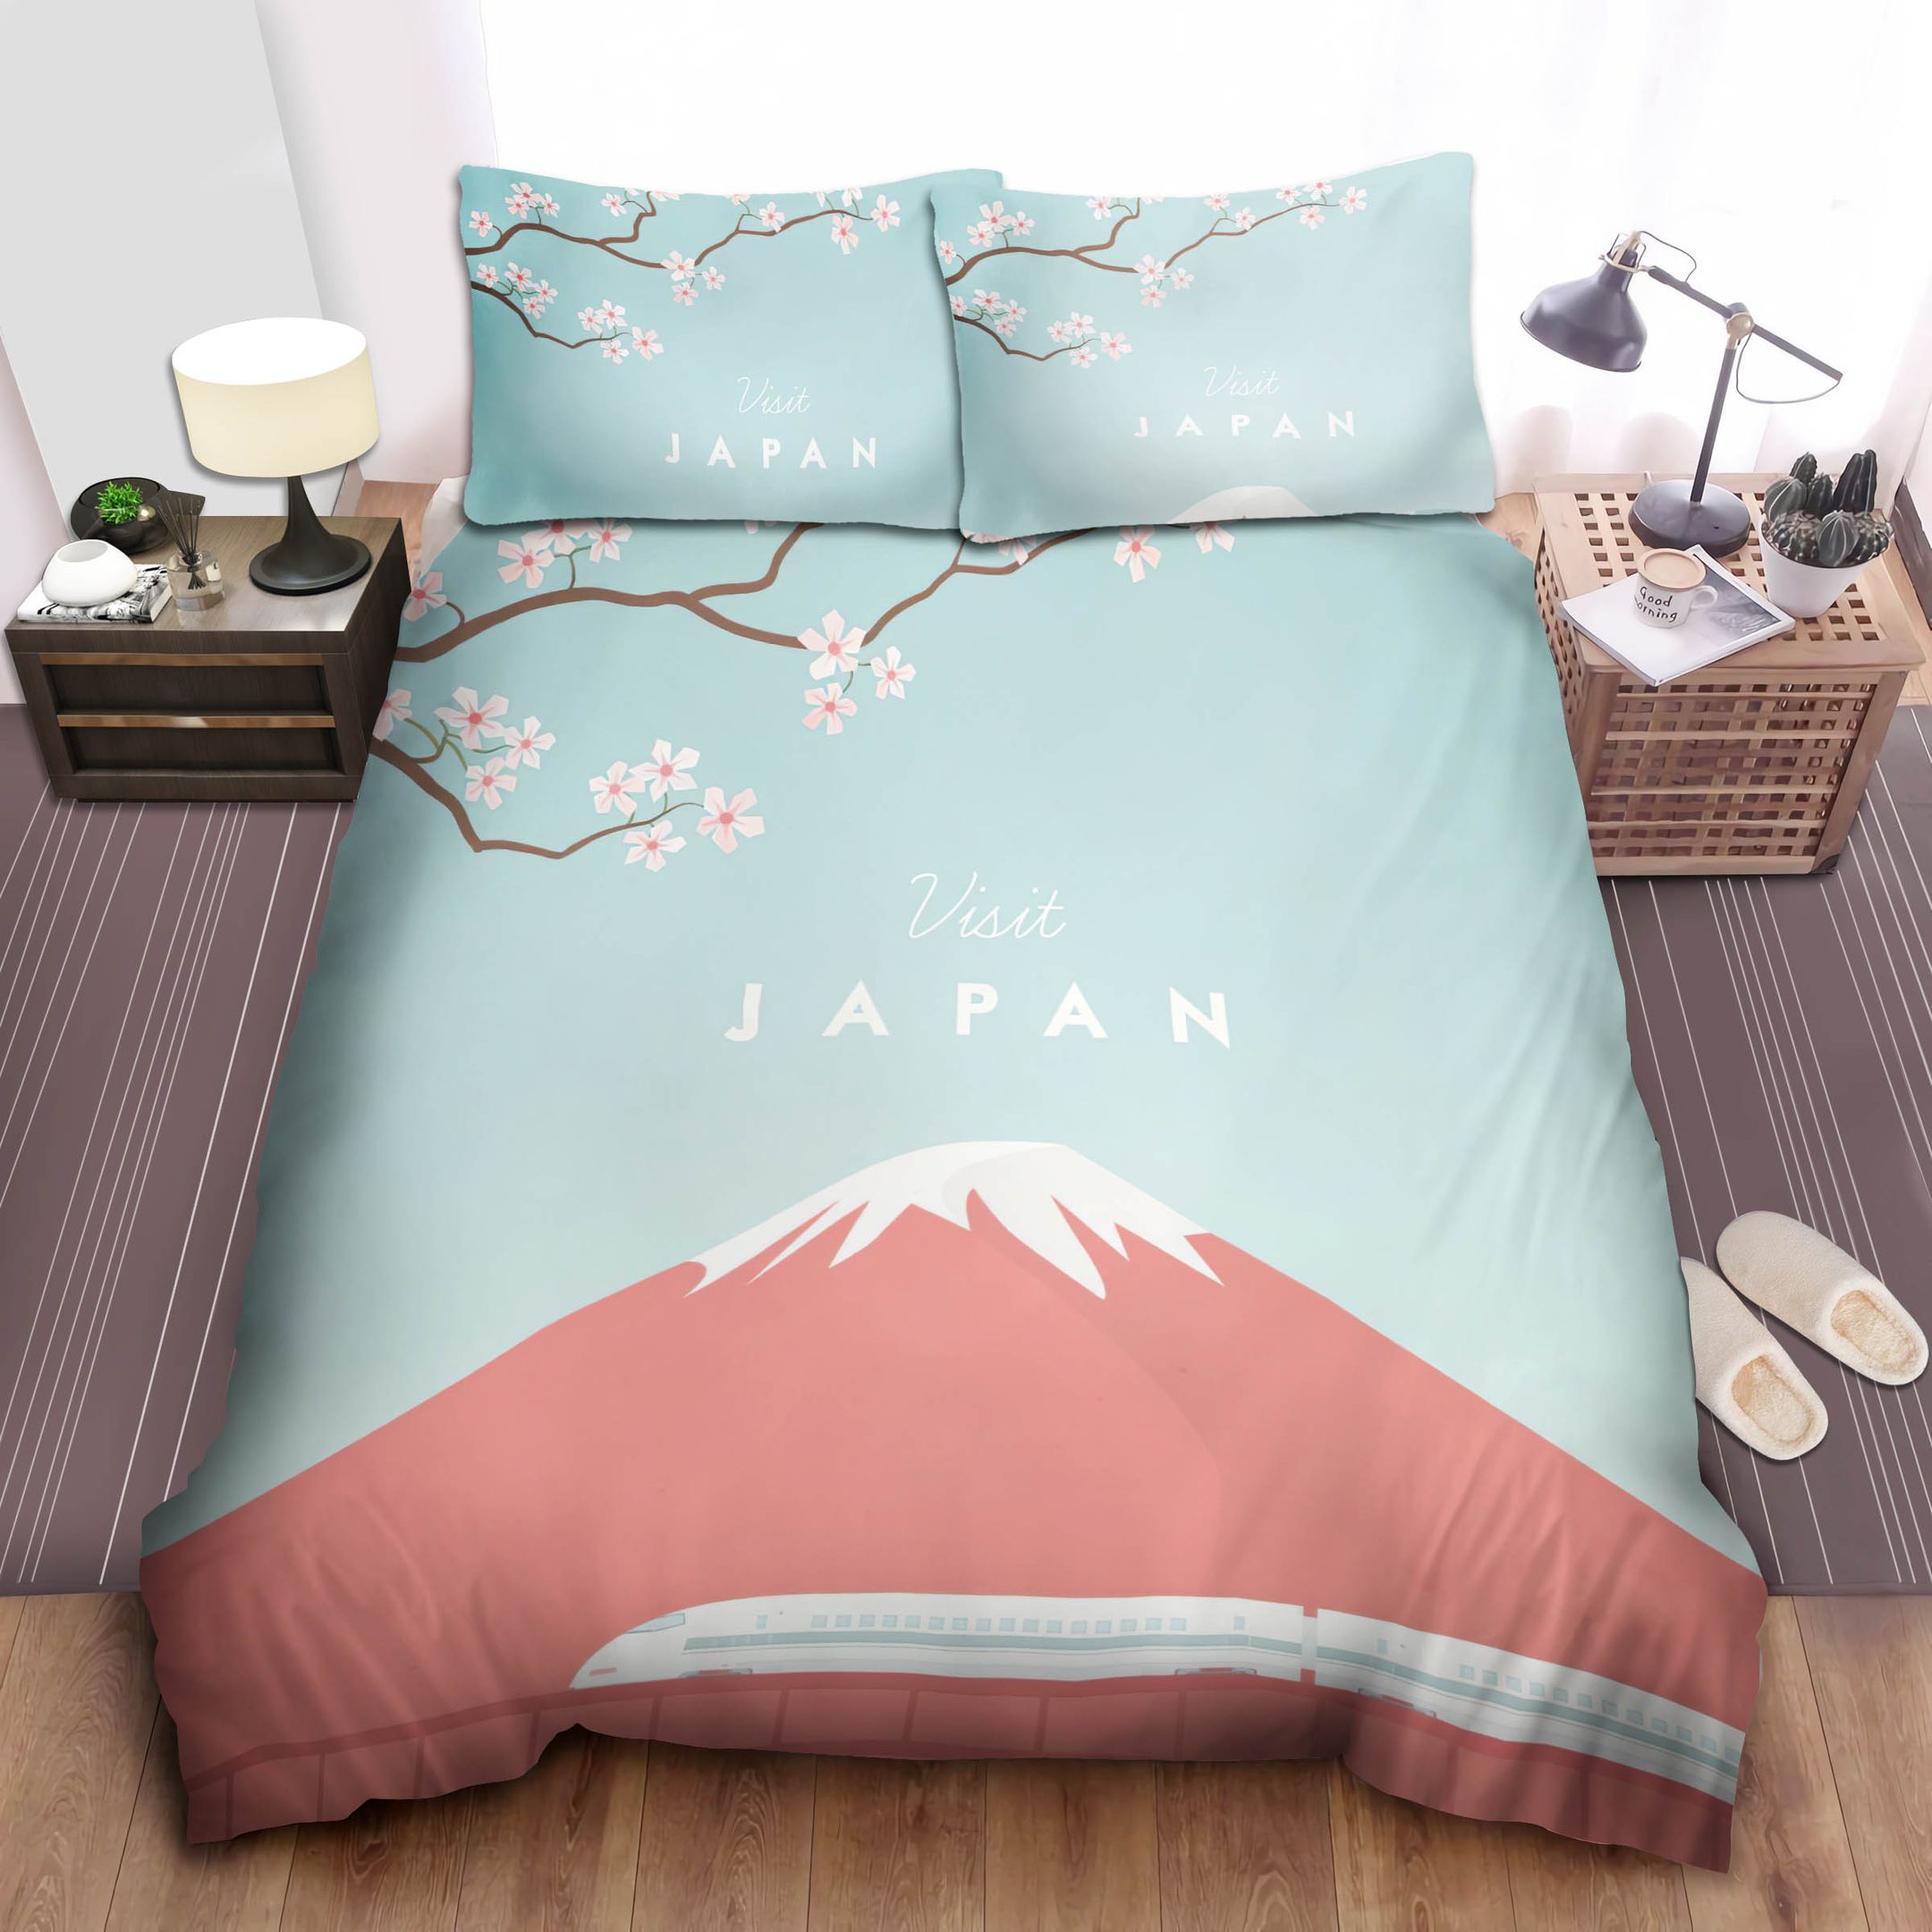 Japan Bed Sheets Spread Comforter Duvet Cover Bedding Sets